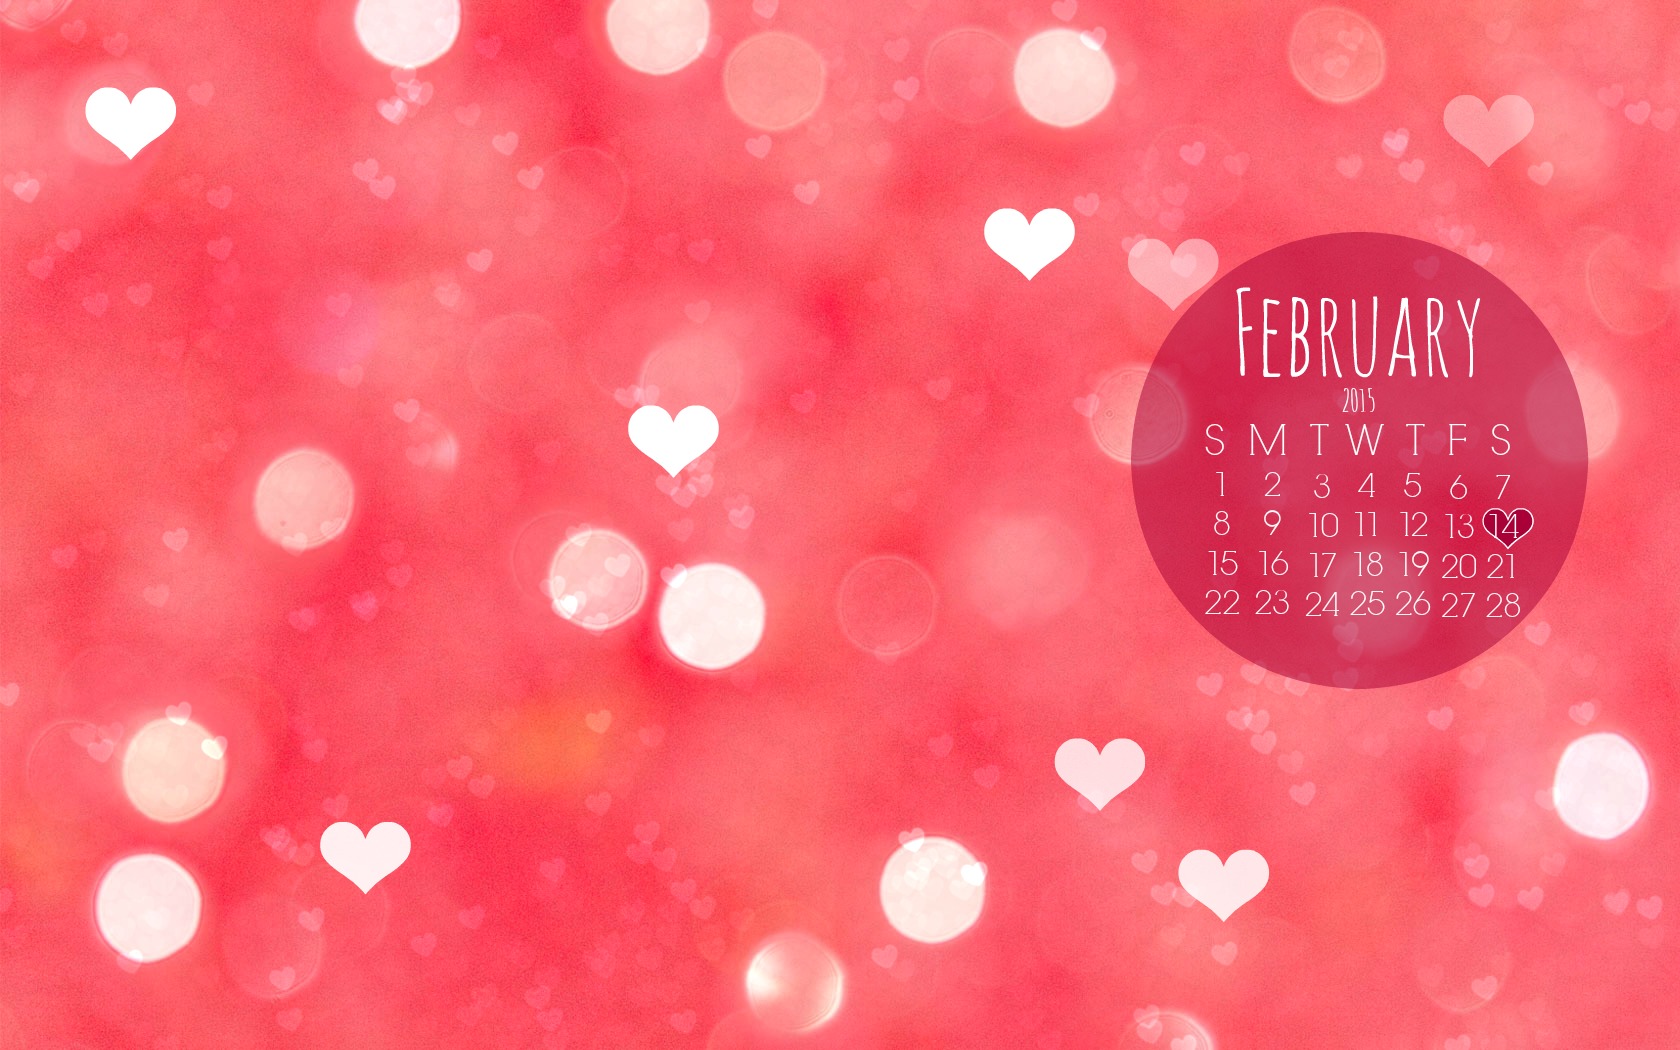 Free Wallpaper Background For February / February Calendar Wallpaper